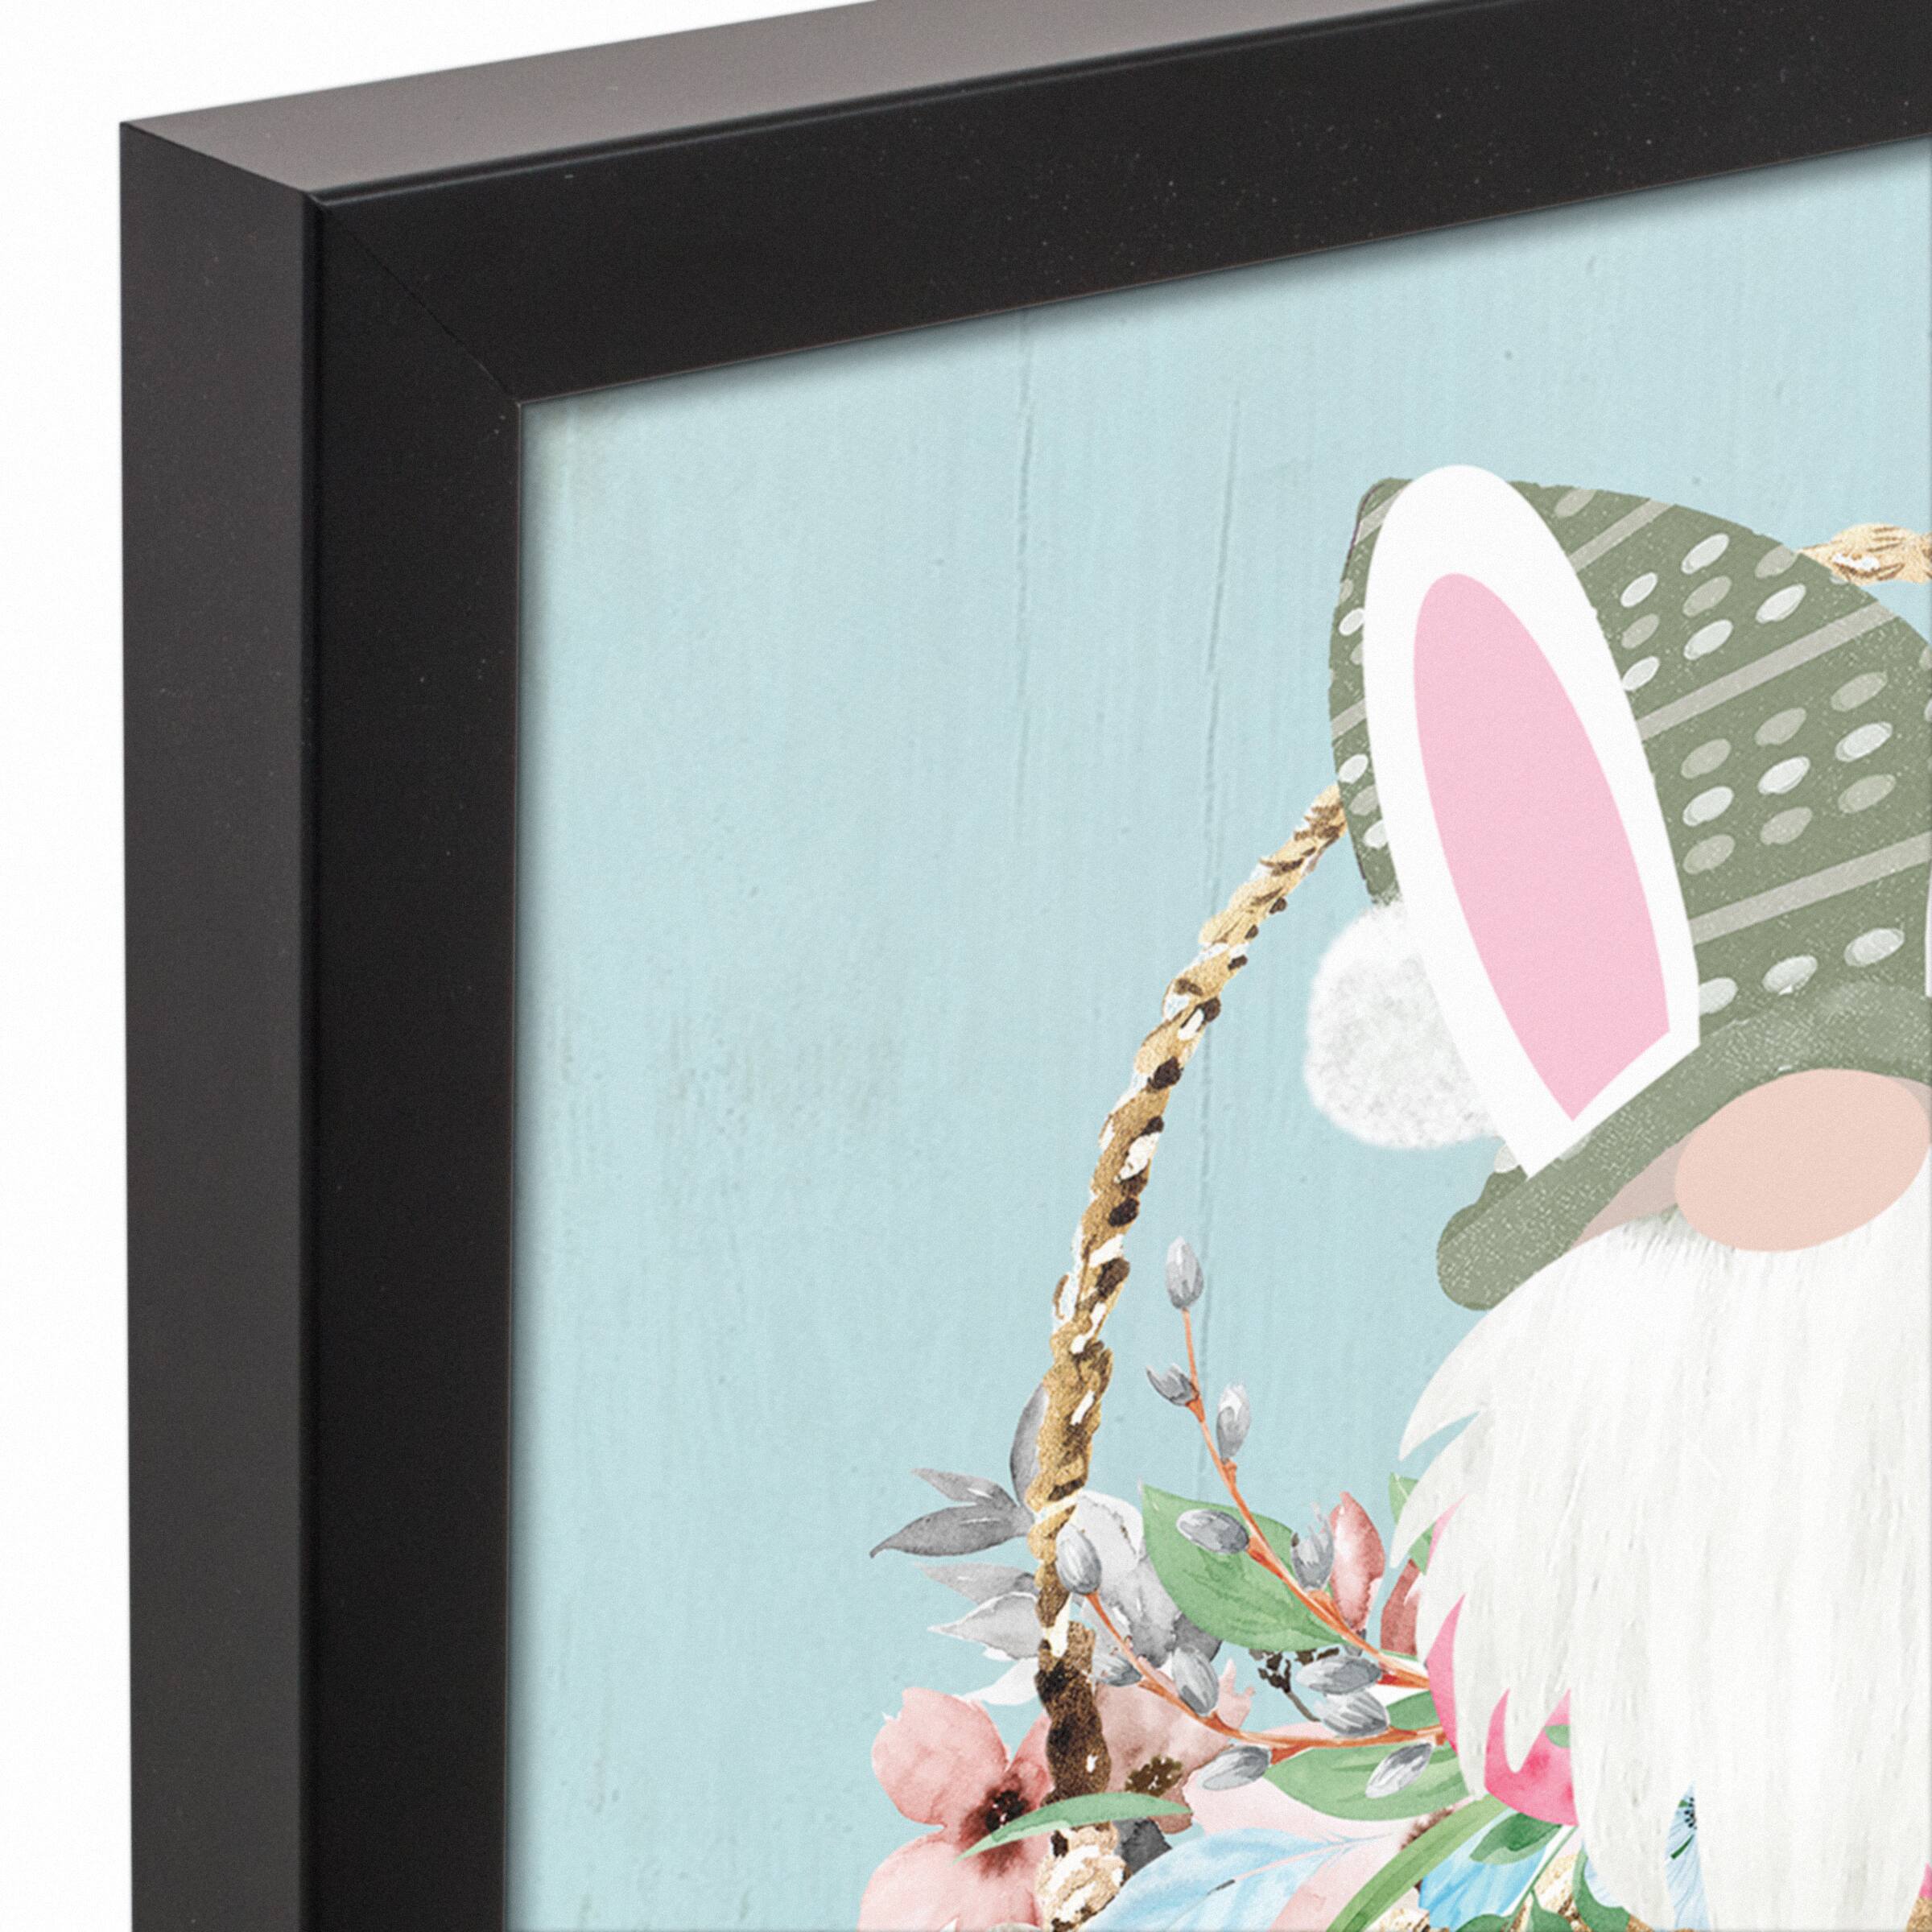 Gnome Bunny Basket Black Framed Canvas